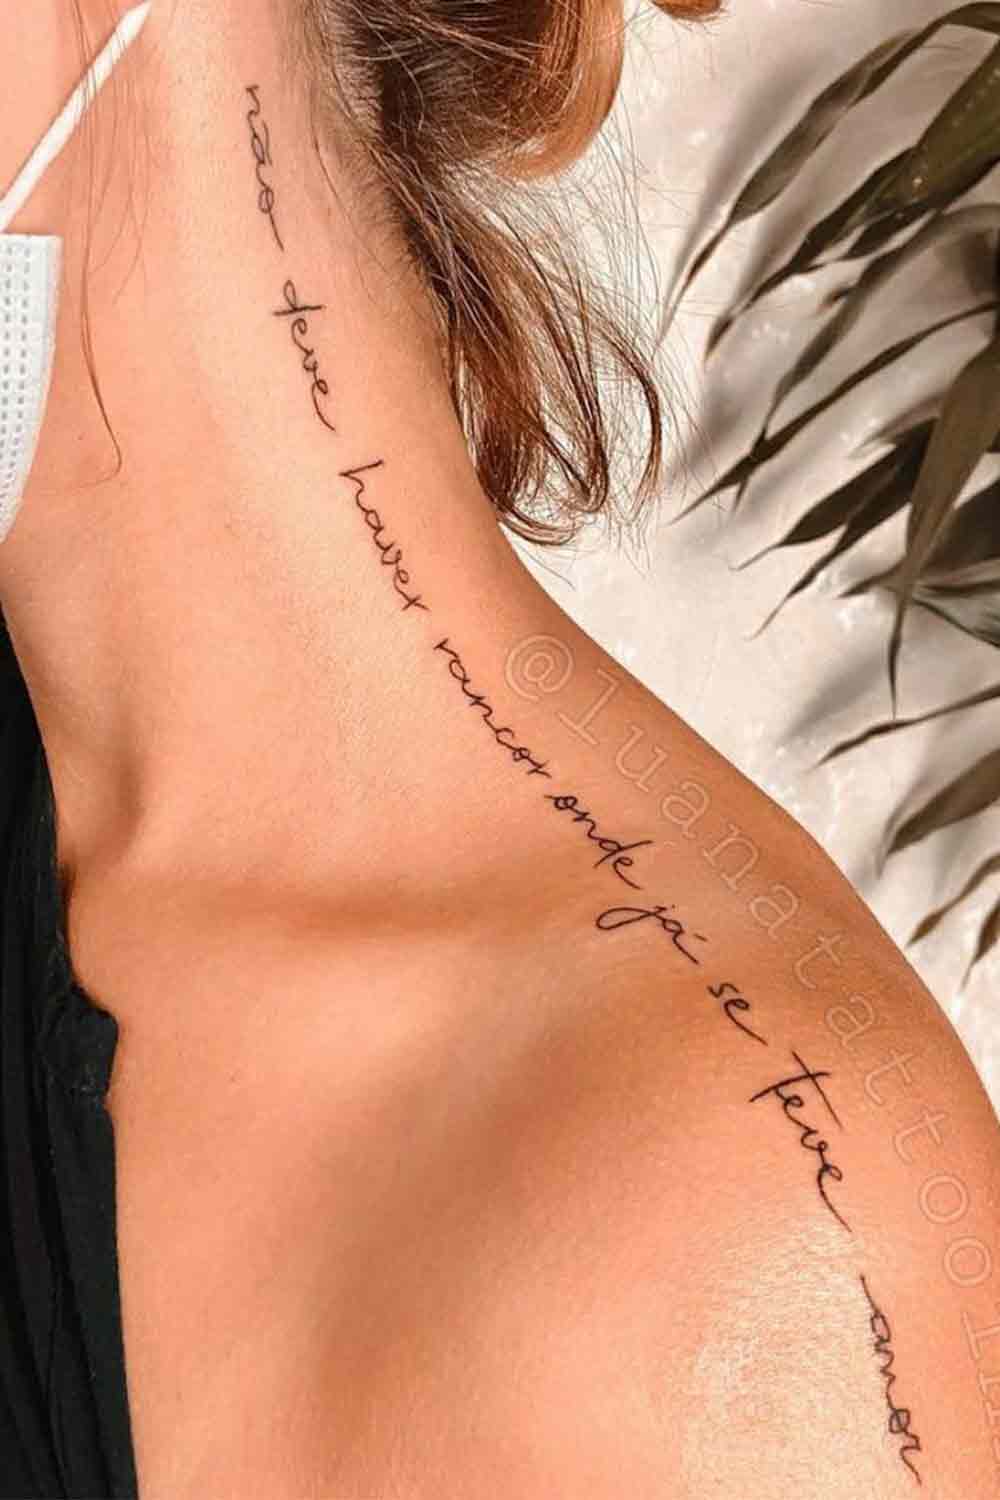 tatuagem-de-frases-no-ombro-8 